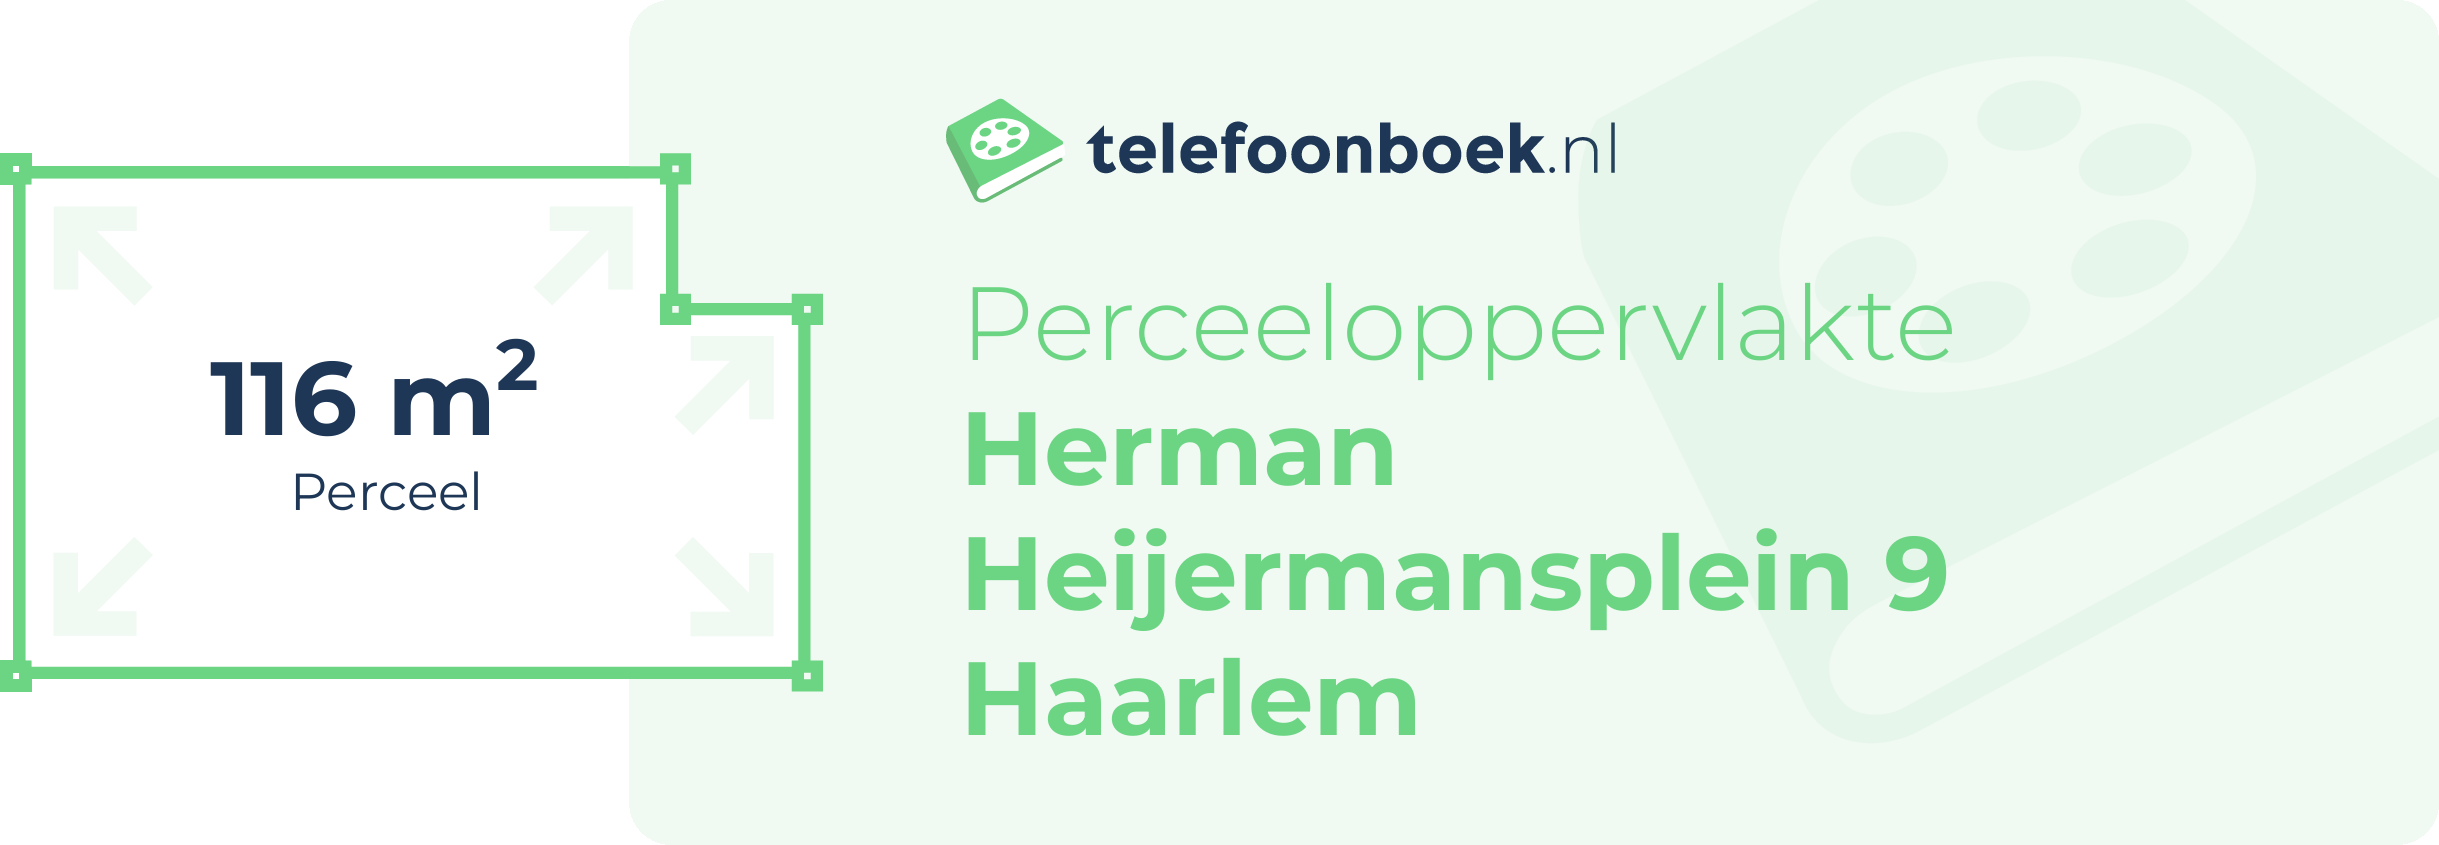 Perceeloppervlakte Herman Heijermansplein 9 Haarlem